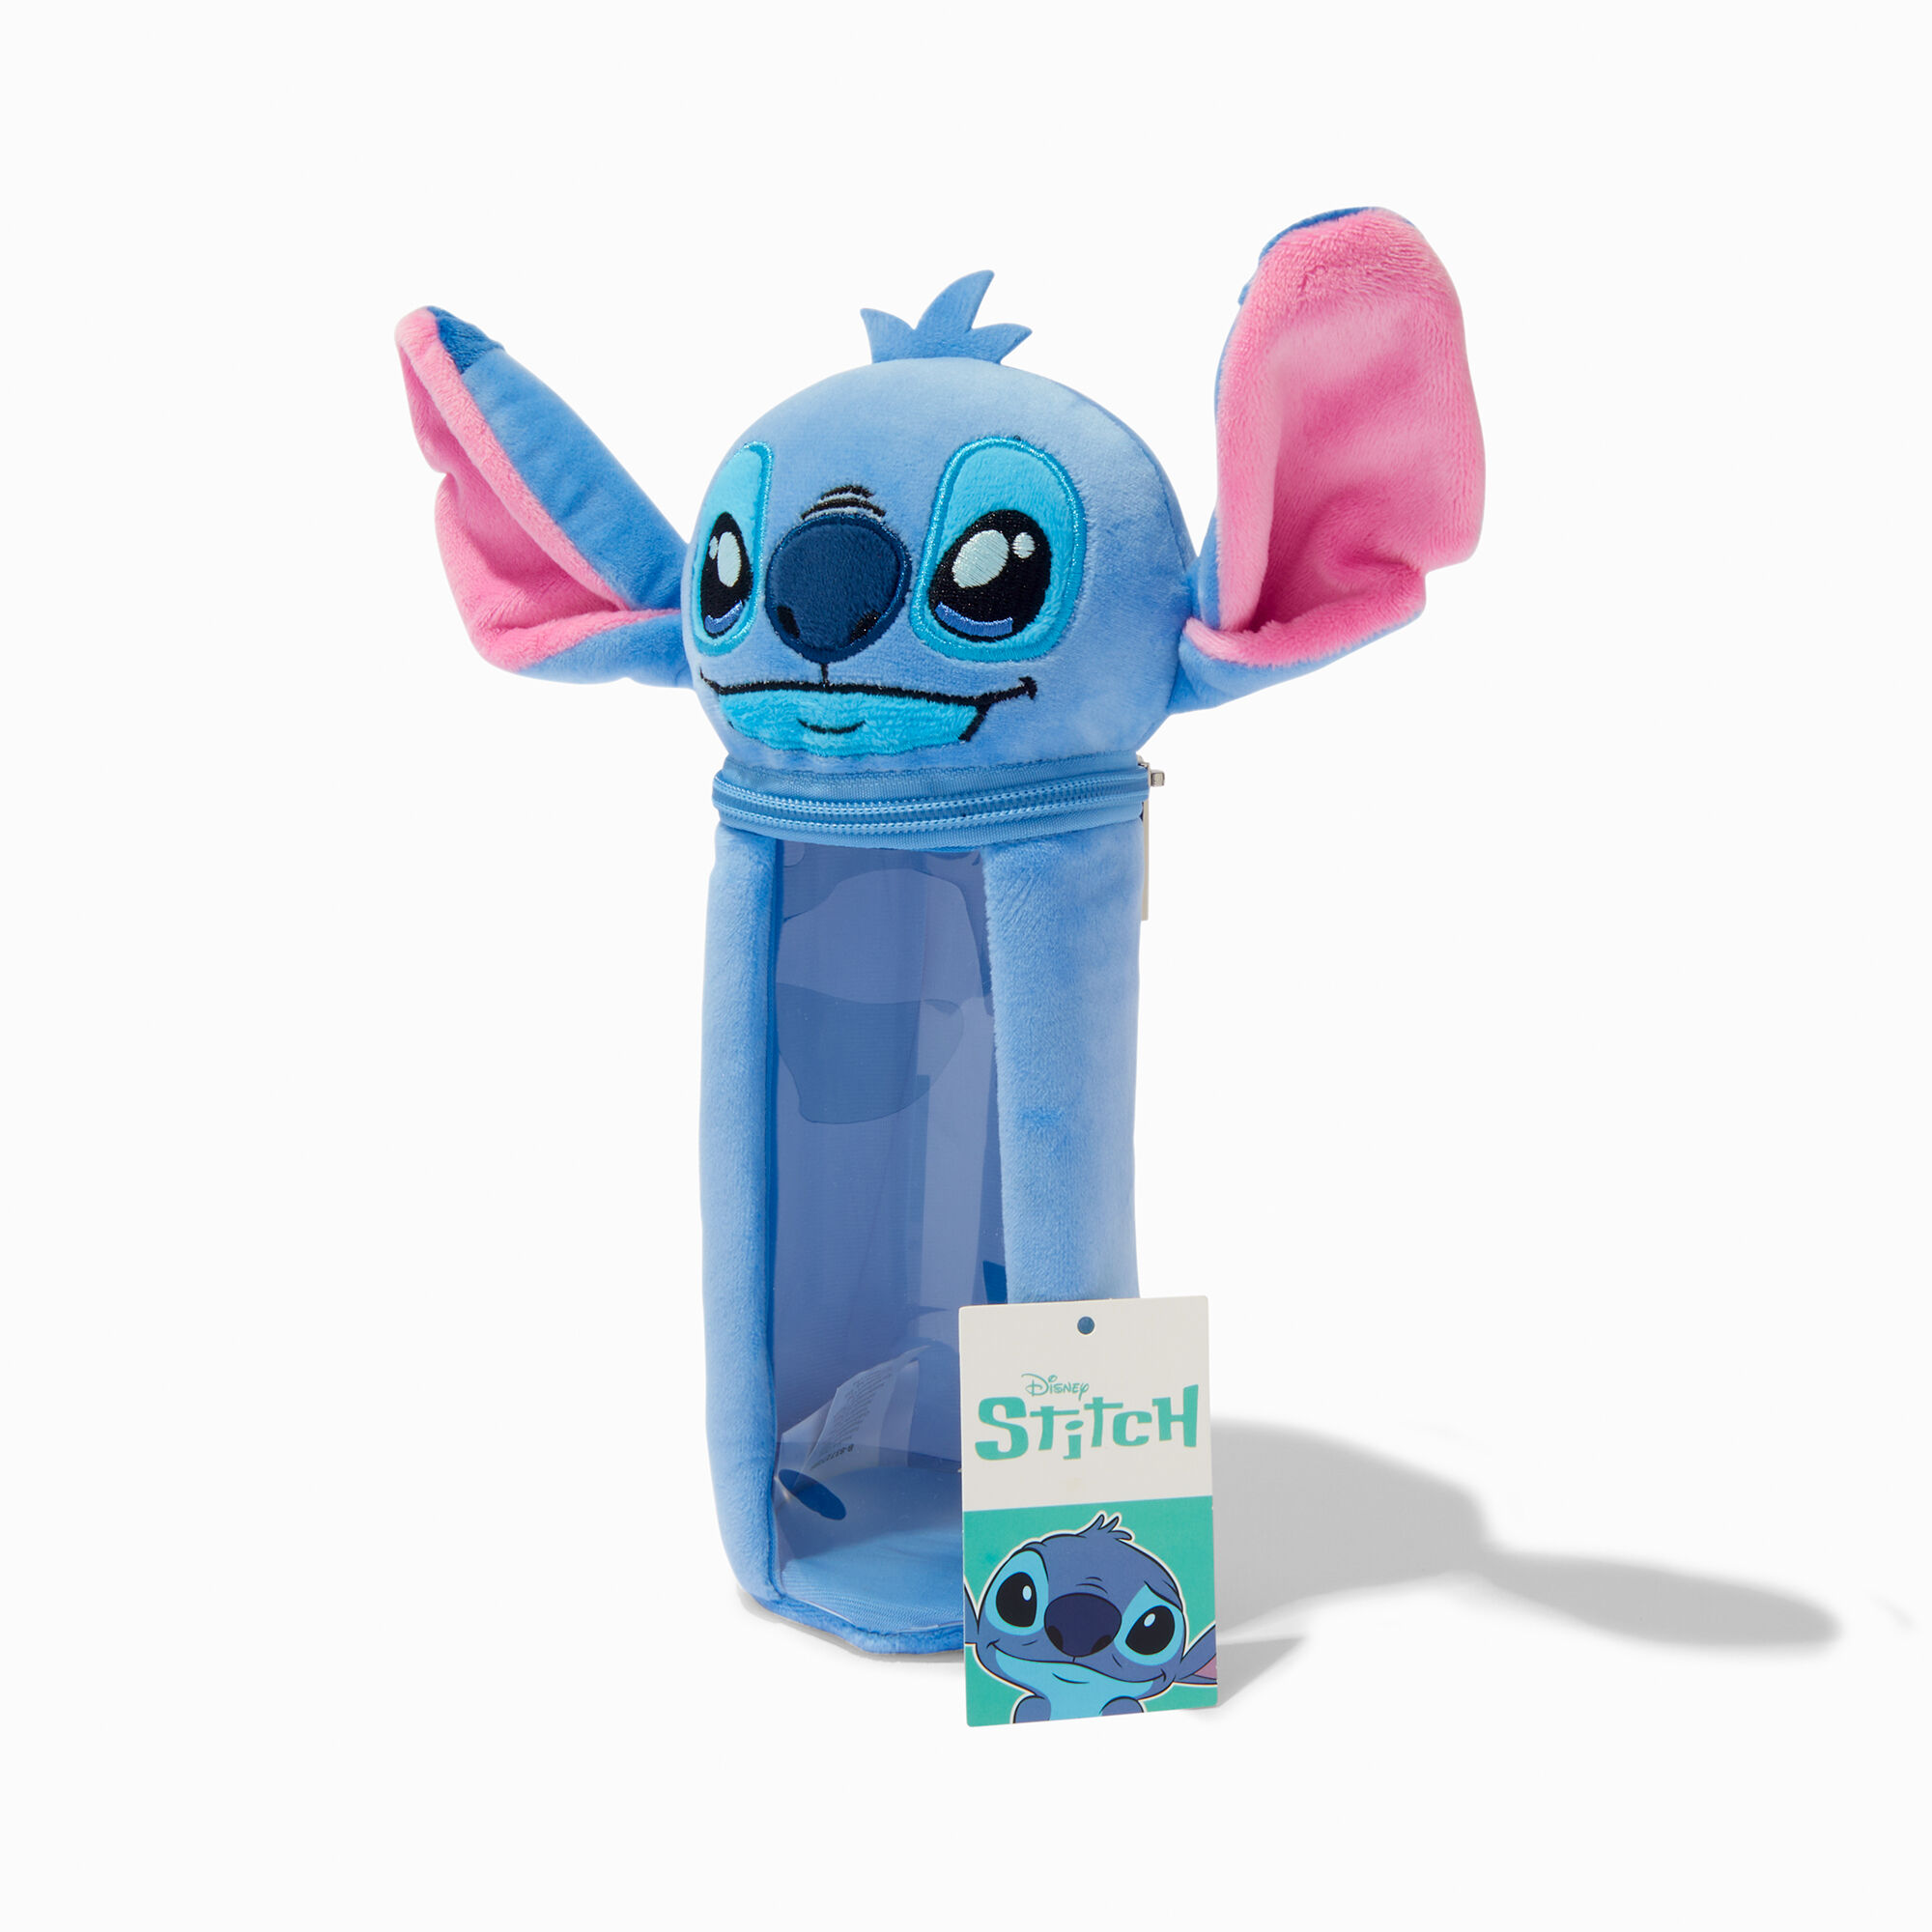 View Claires Disney Stitch Plush Pencil Case information